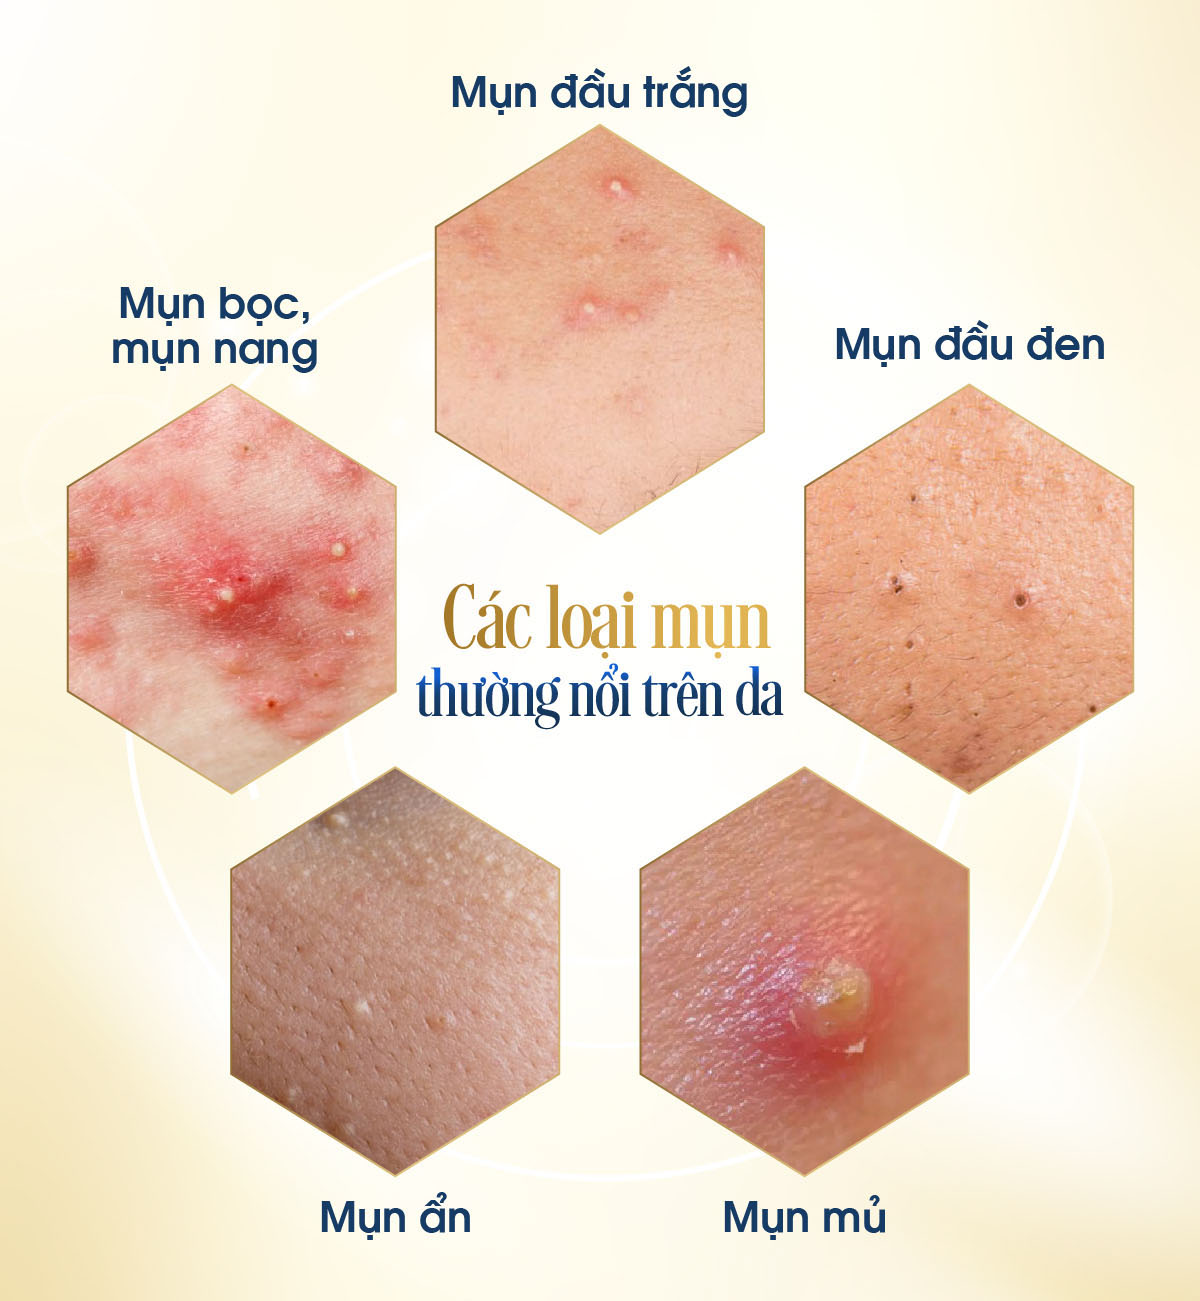 Các loại mụn thường nổi trên da